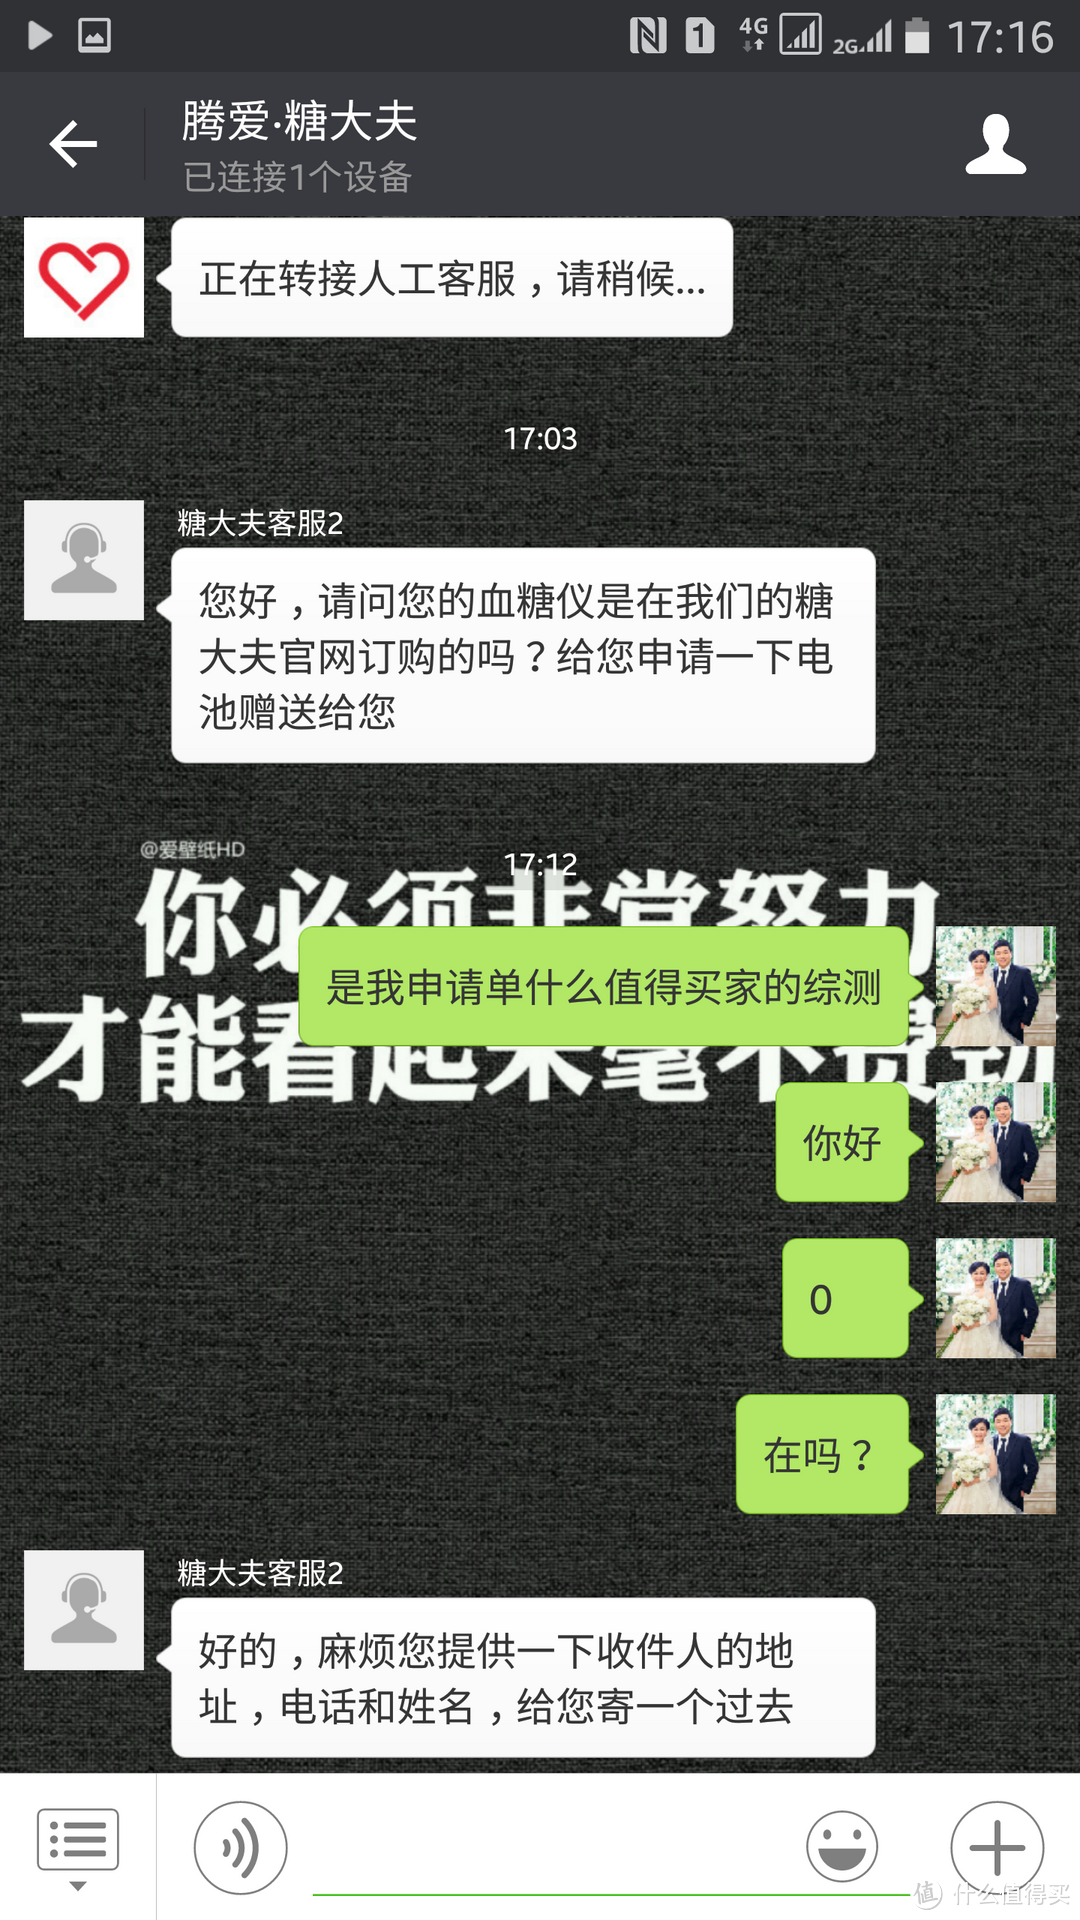 别让等待成为遗憾----Tencent 腾讯 腾爱·糖大夫 G-31 微信智能血糖仪众测报告